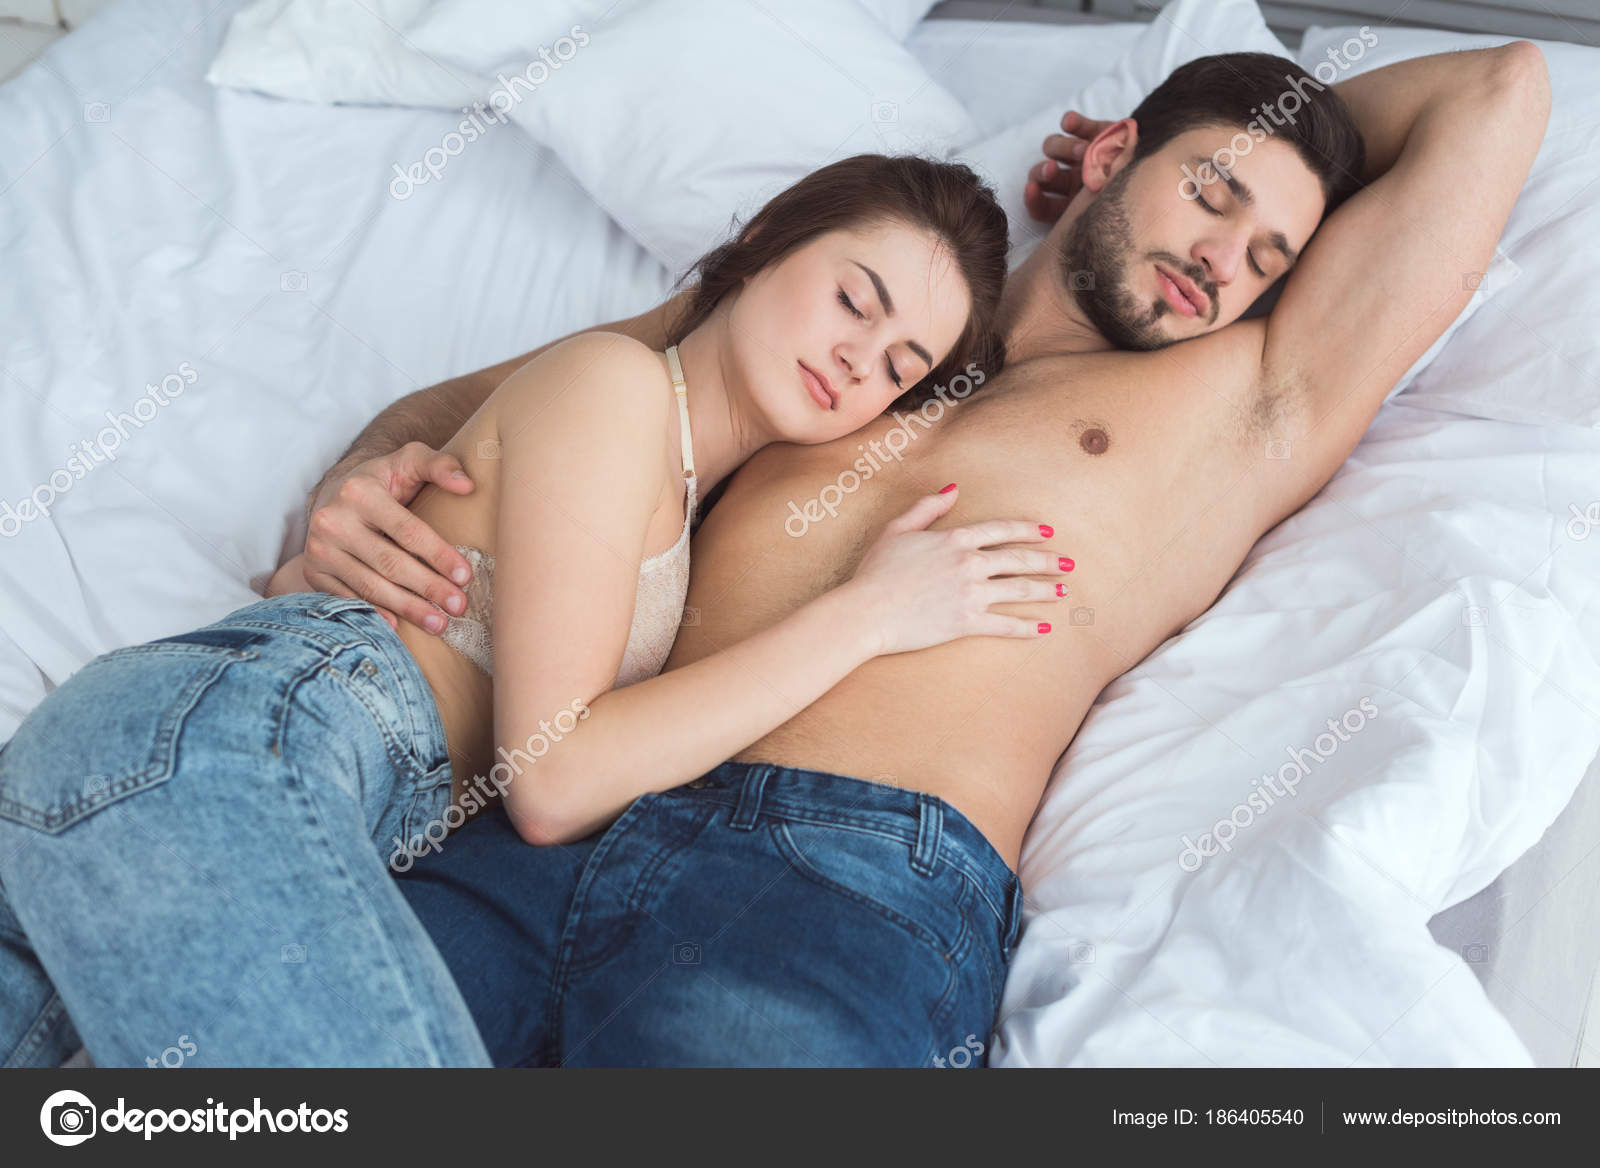 Женщина нежится в кровати 79 фото - секс фото 